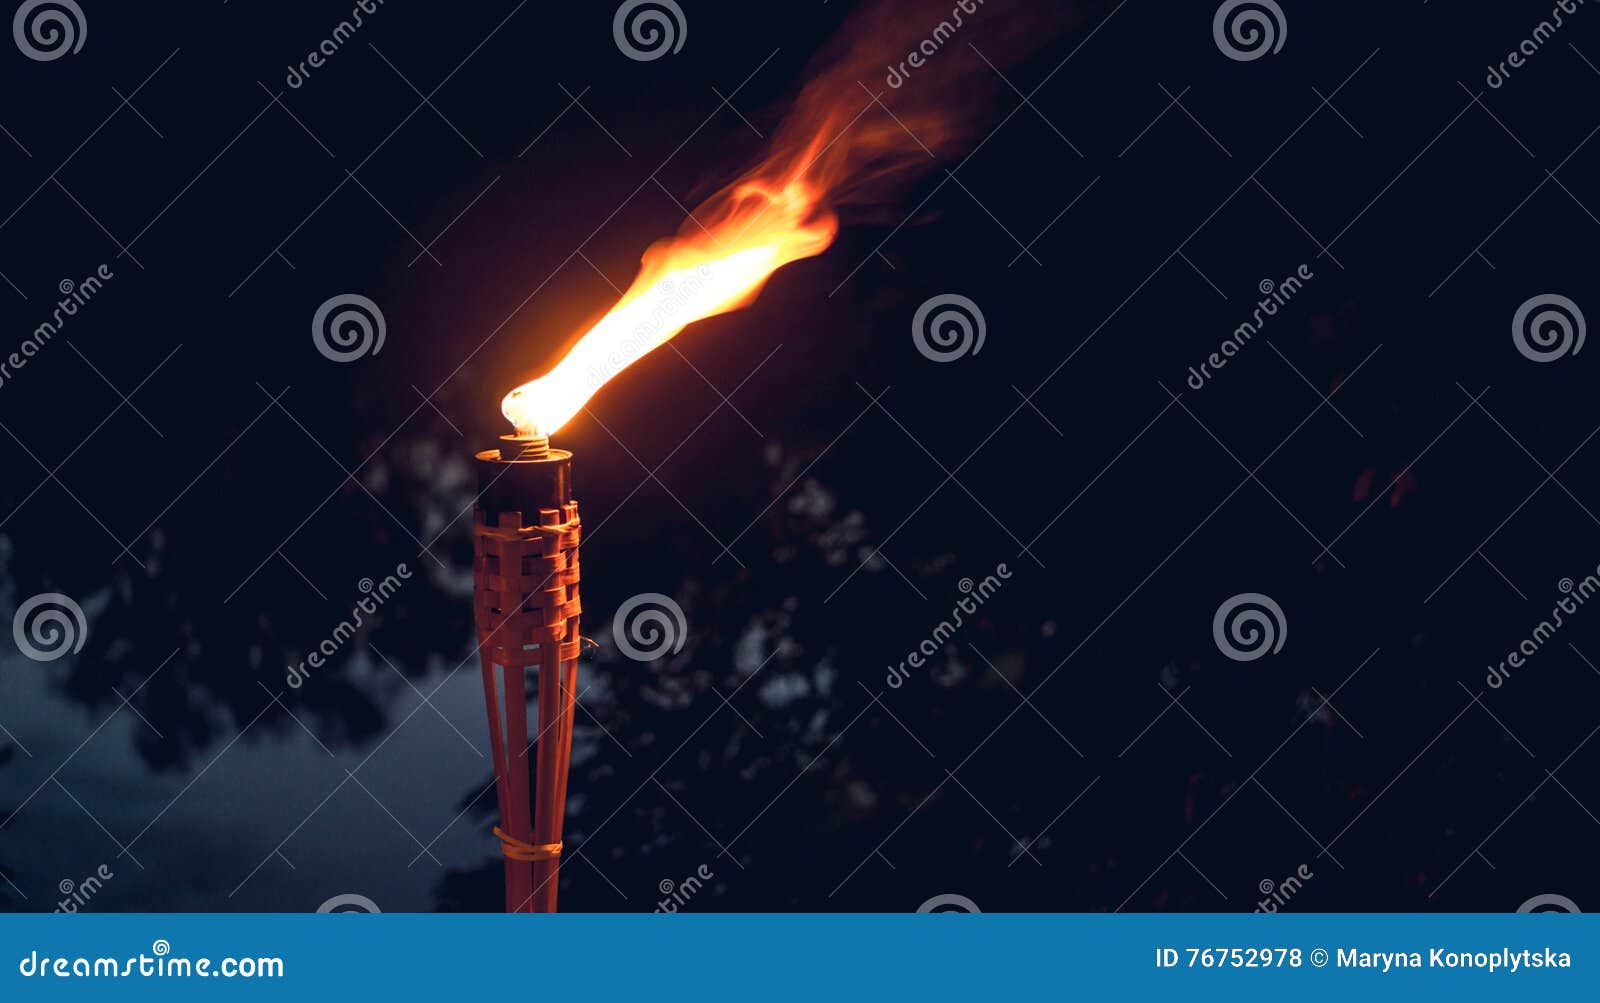 Факела горят в руках мод. Картинки с изображением горящего факела. Потушенный факел. Горящий факел фон для презентации. Красивый фон для презентации факелы.